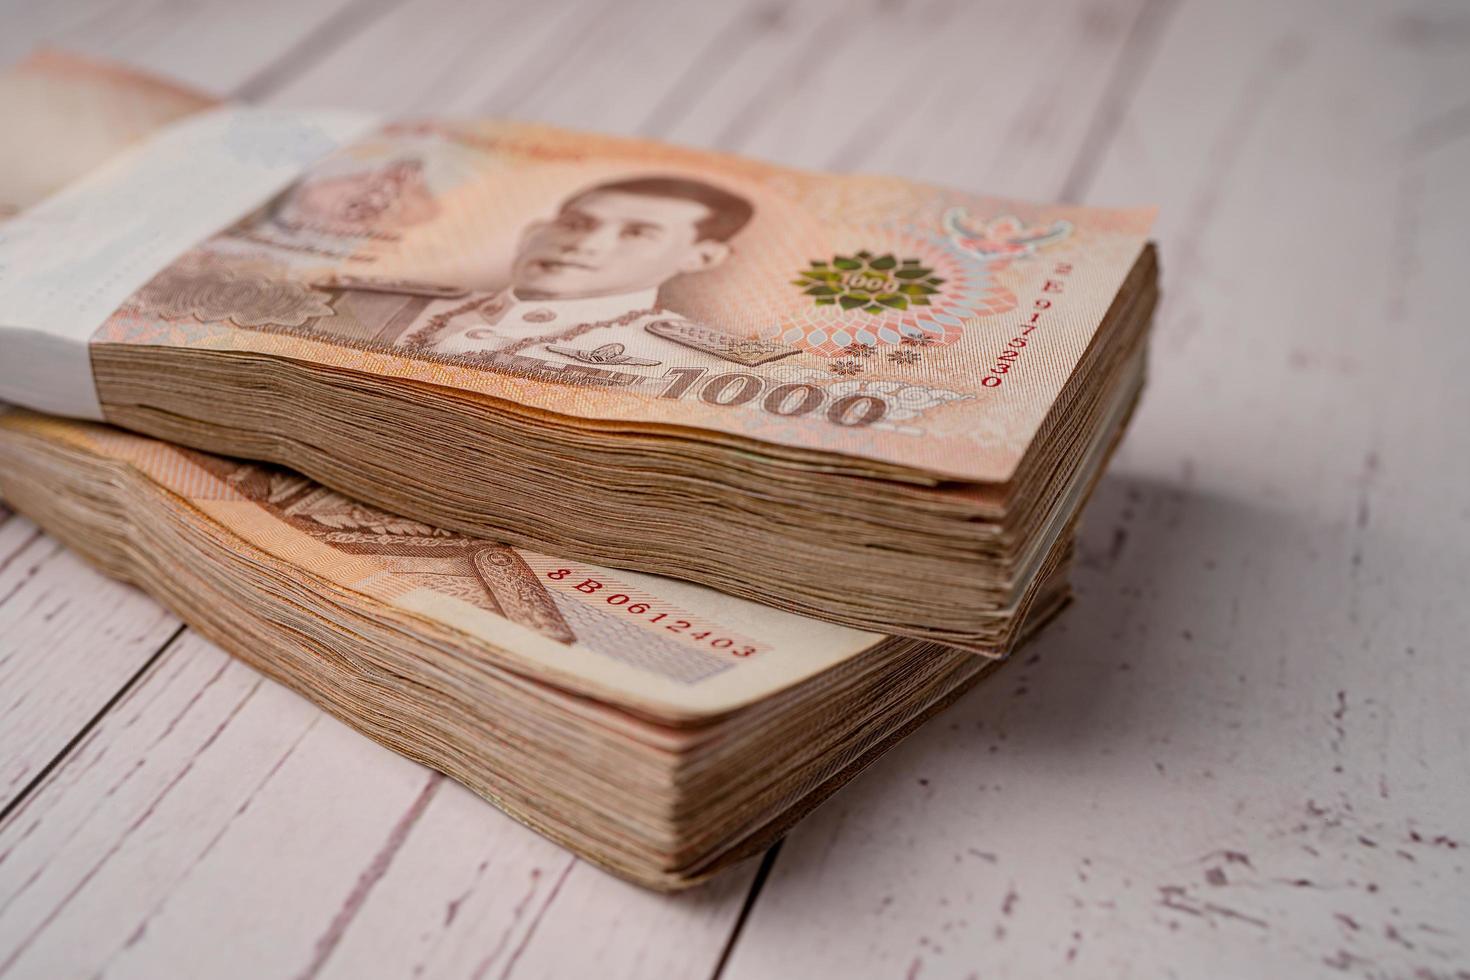 pile de billets de banque en baht thaïlandais sur fond de bois, concept d'investissement financier d'économie d'entreprise. photo